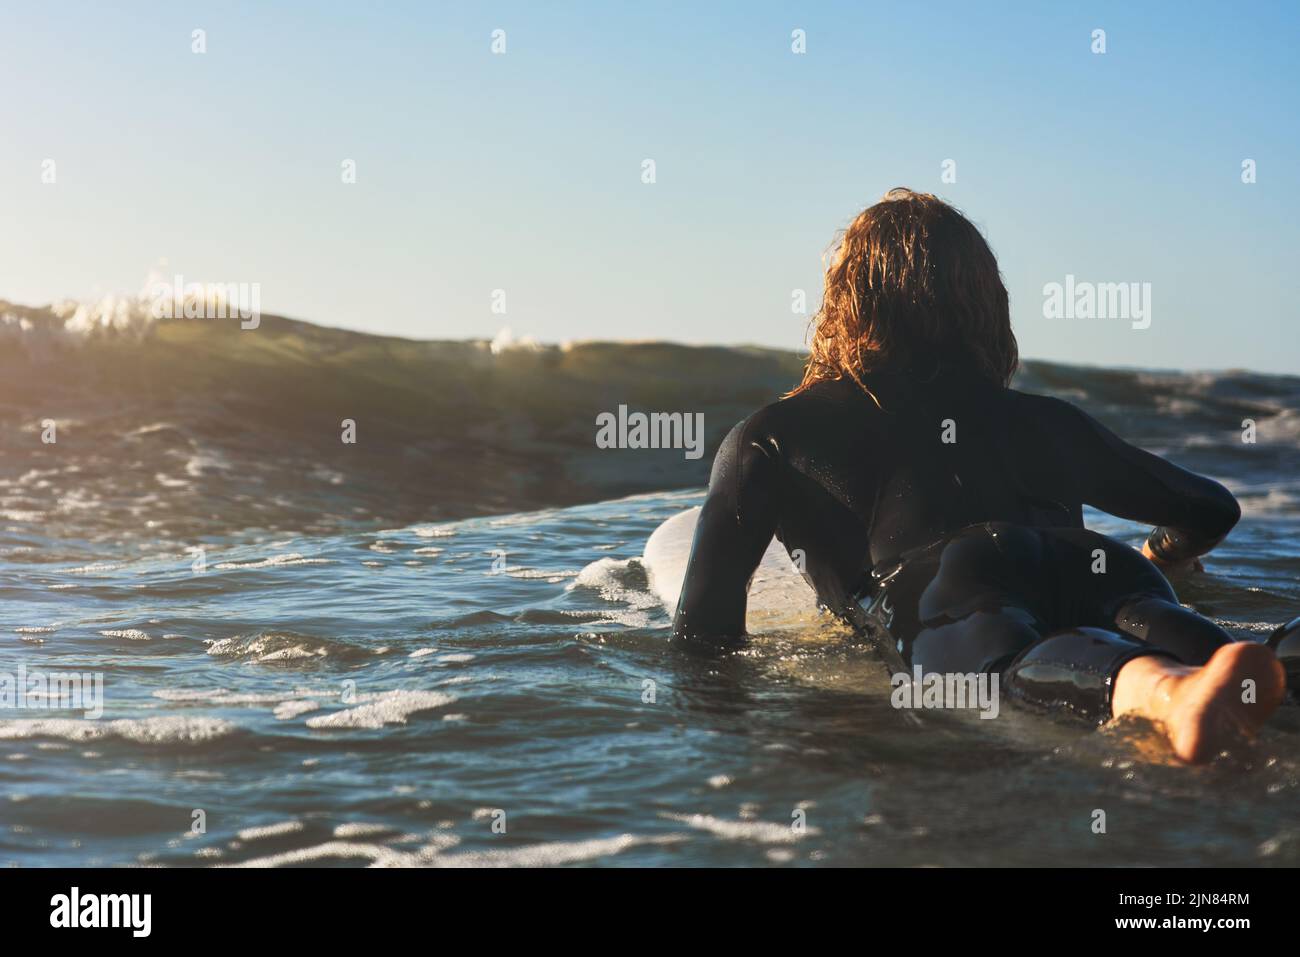 Das nenne ich die Gelegenheit. Rückansicht eines jungen Mannes, der im Meer surft. Stockfoto